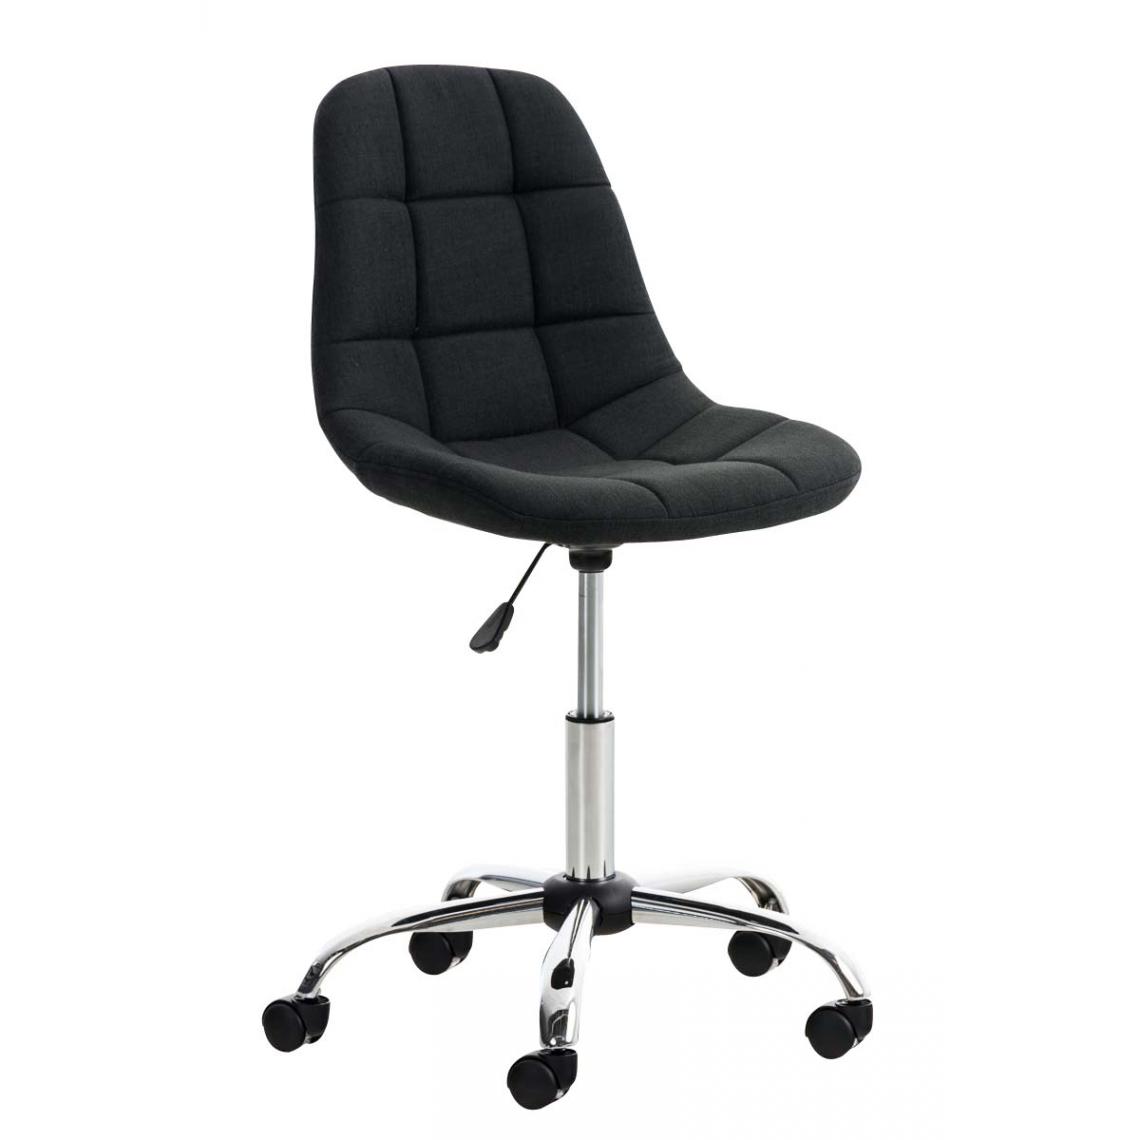 Icaverne - Moderne Chaise de bureau gamme Sanaa Stoff couleur noir - Chaises